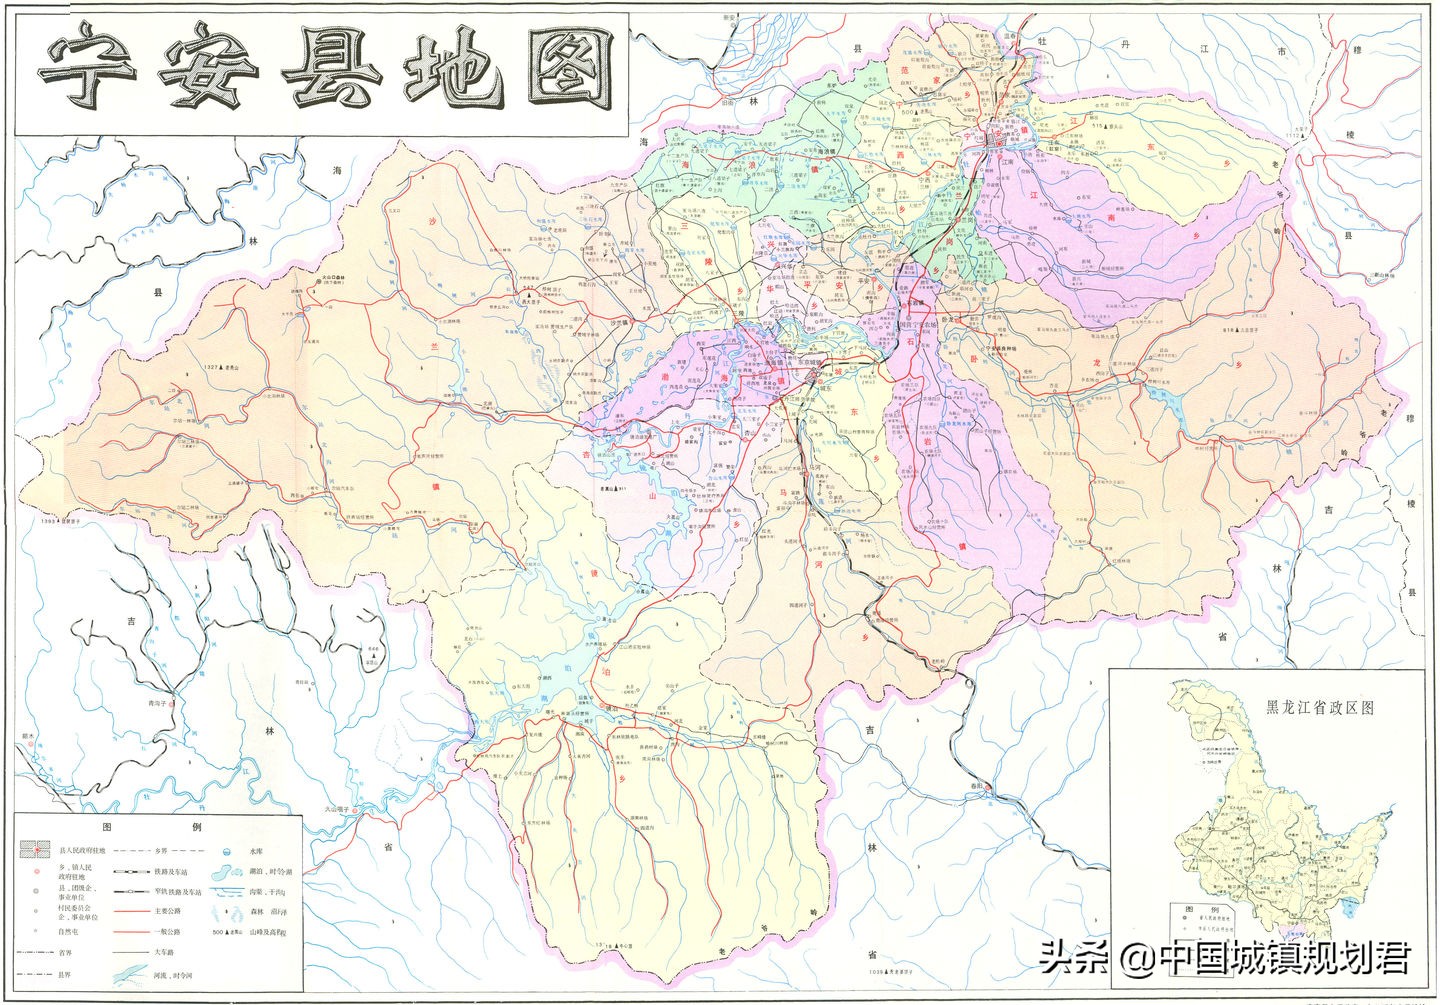 有趣的行政区划：用地图证明“中国雪乡”不在黑龙江省而在吉林省